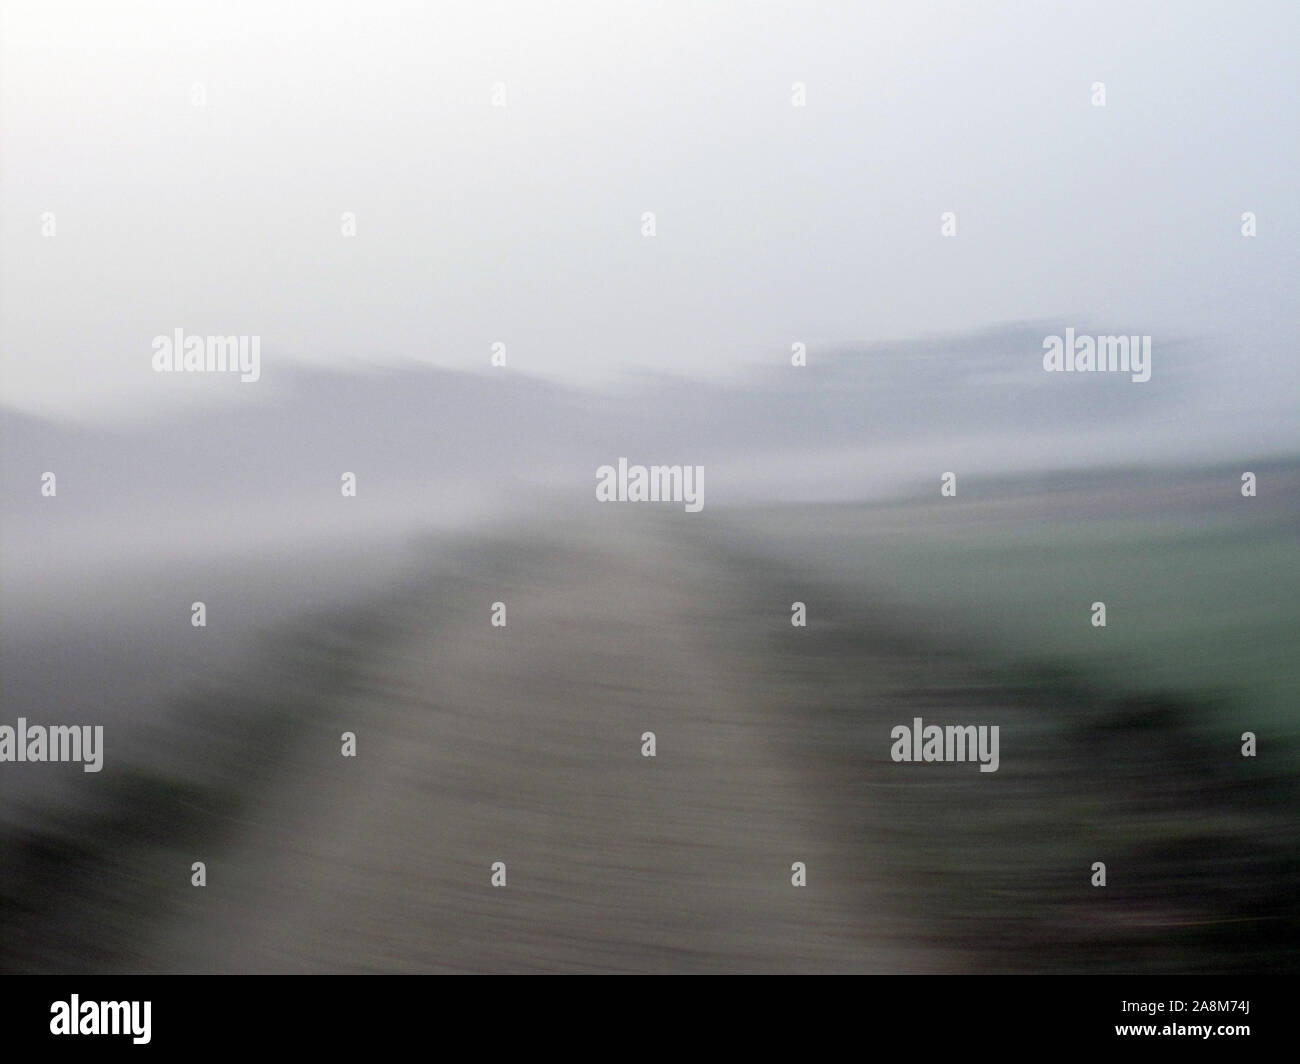 Misty Morning in der Bengalischen Landschaft in Sundarbans Dschungel, West Bengal, Indien. Stockfoto